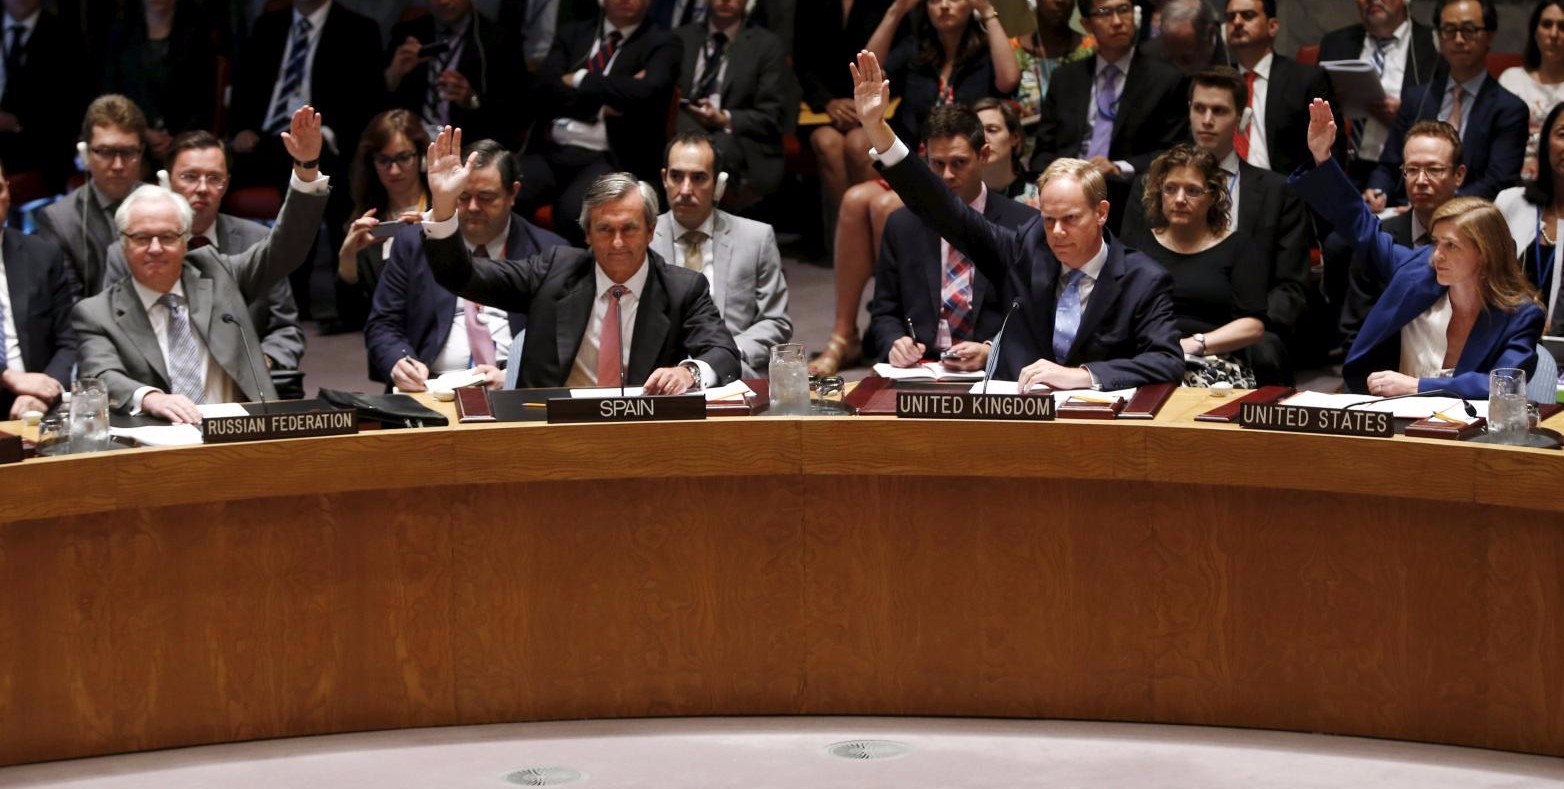 El embajador británico critica el uso de veto en el Consejo de Seguridad de la ONU